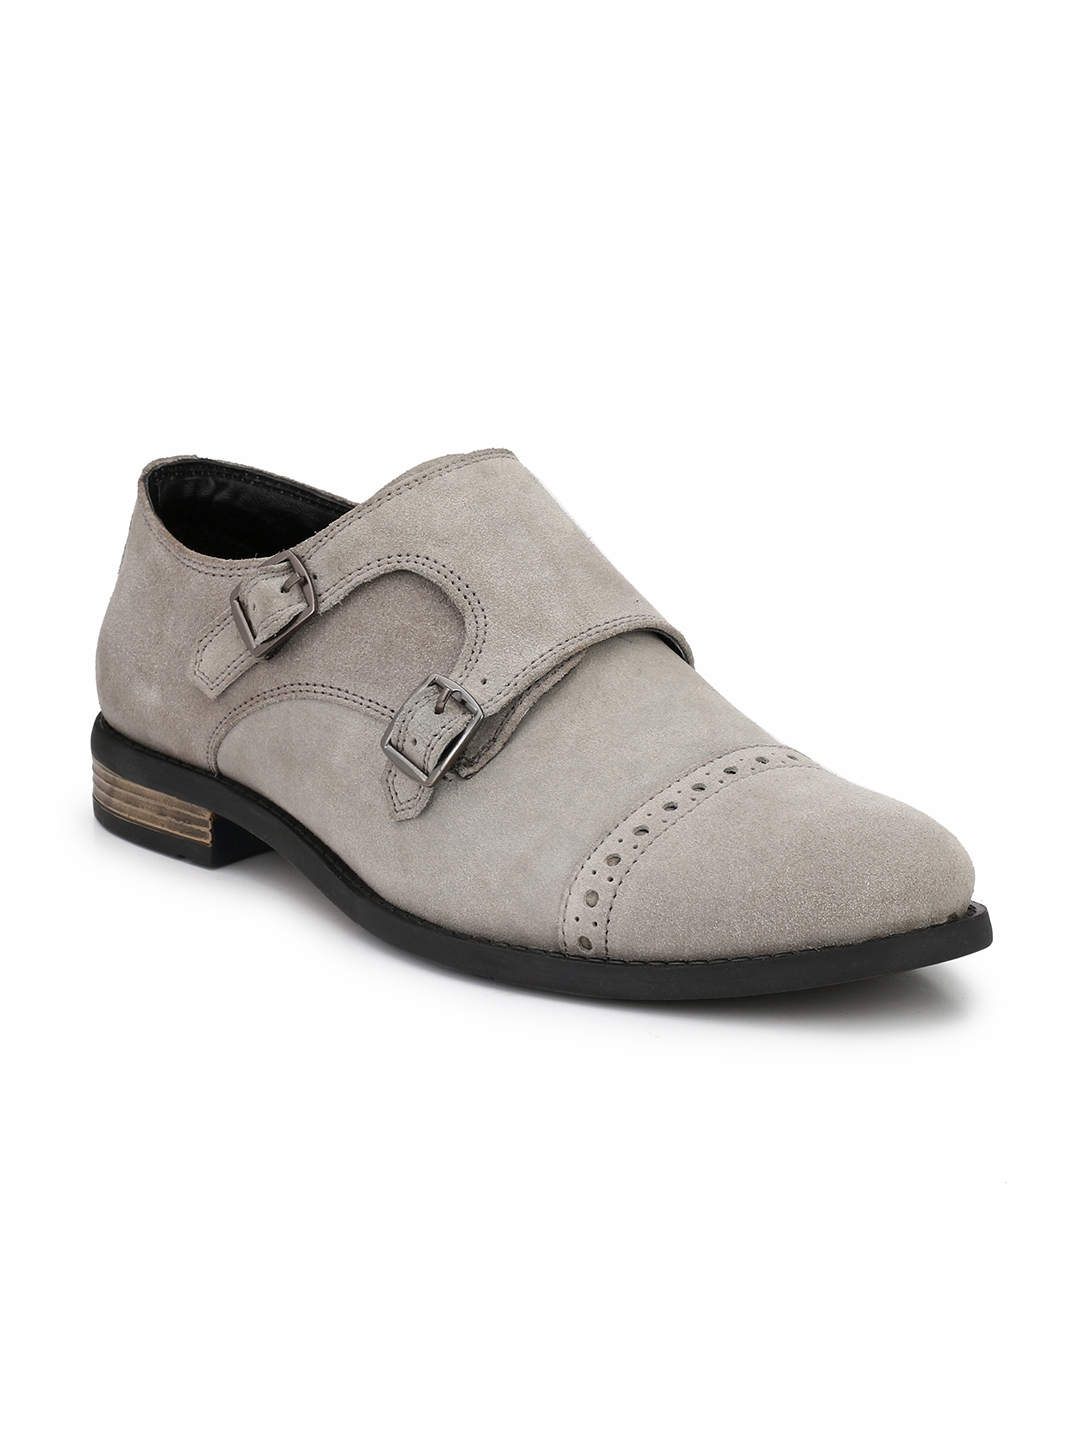 Buy SADDLE & BARNES Men Grey Suede Formal Monks - Formal Shoes for Men ...